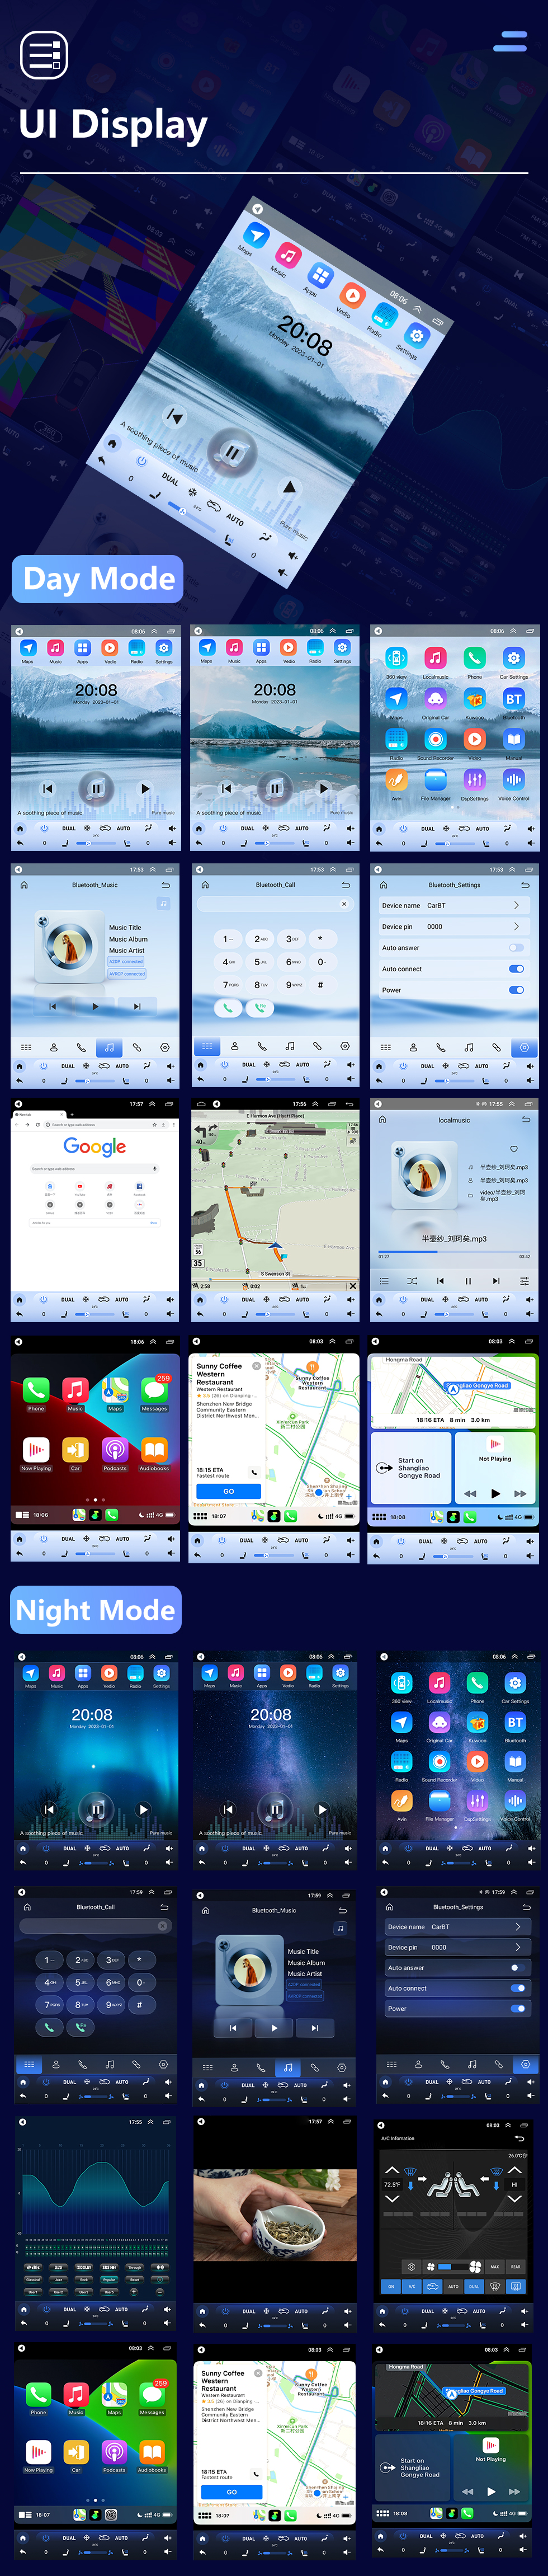 Seicane 9,7-дюймовый GPS-навигатор Android 10.0 для 2016 JMC YUSHENG S350 YUHU с сенсорным экраном HD Bluetooth AUX с поддержкой Carplay OBD2